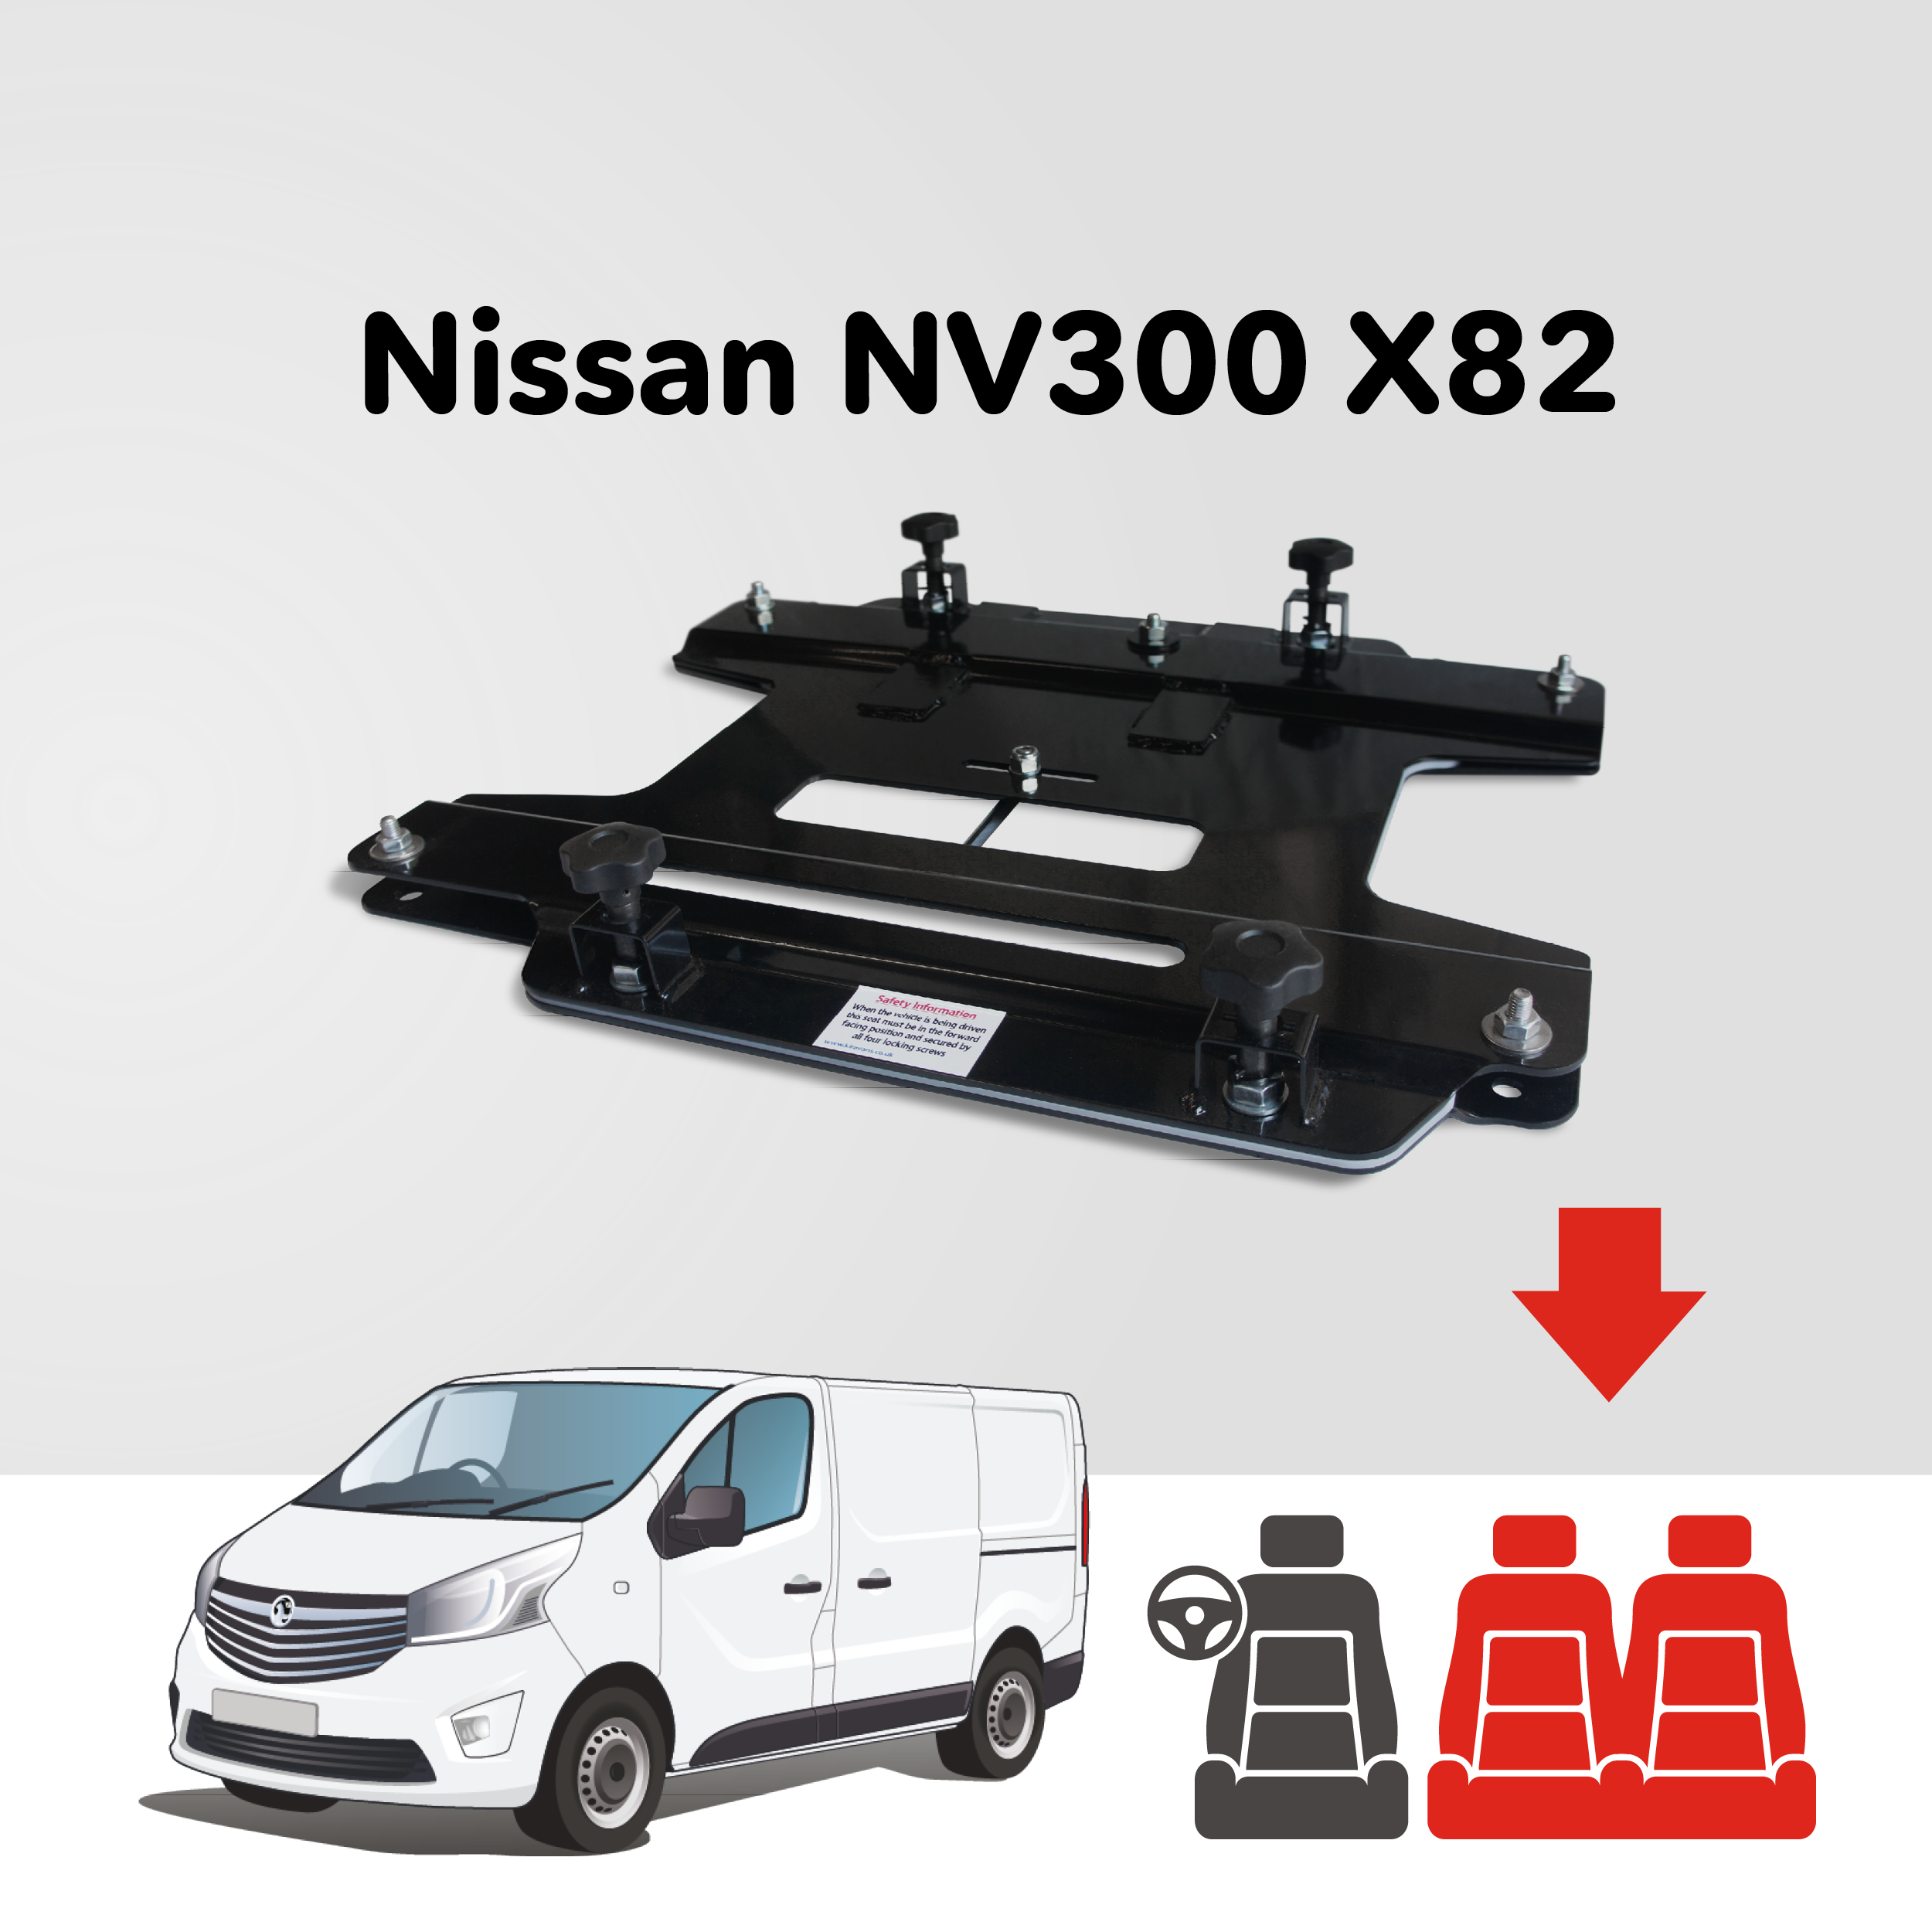 Base tournante double banquette Kiravans - Nissan NV300/Primastar 2014+ (UE - Conduite à gauche)